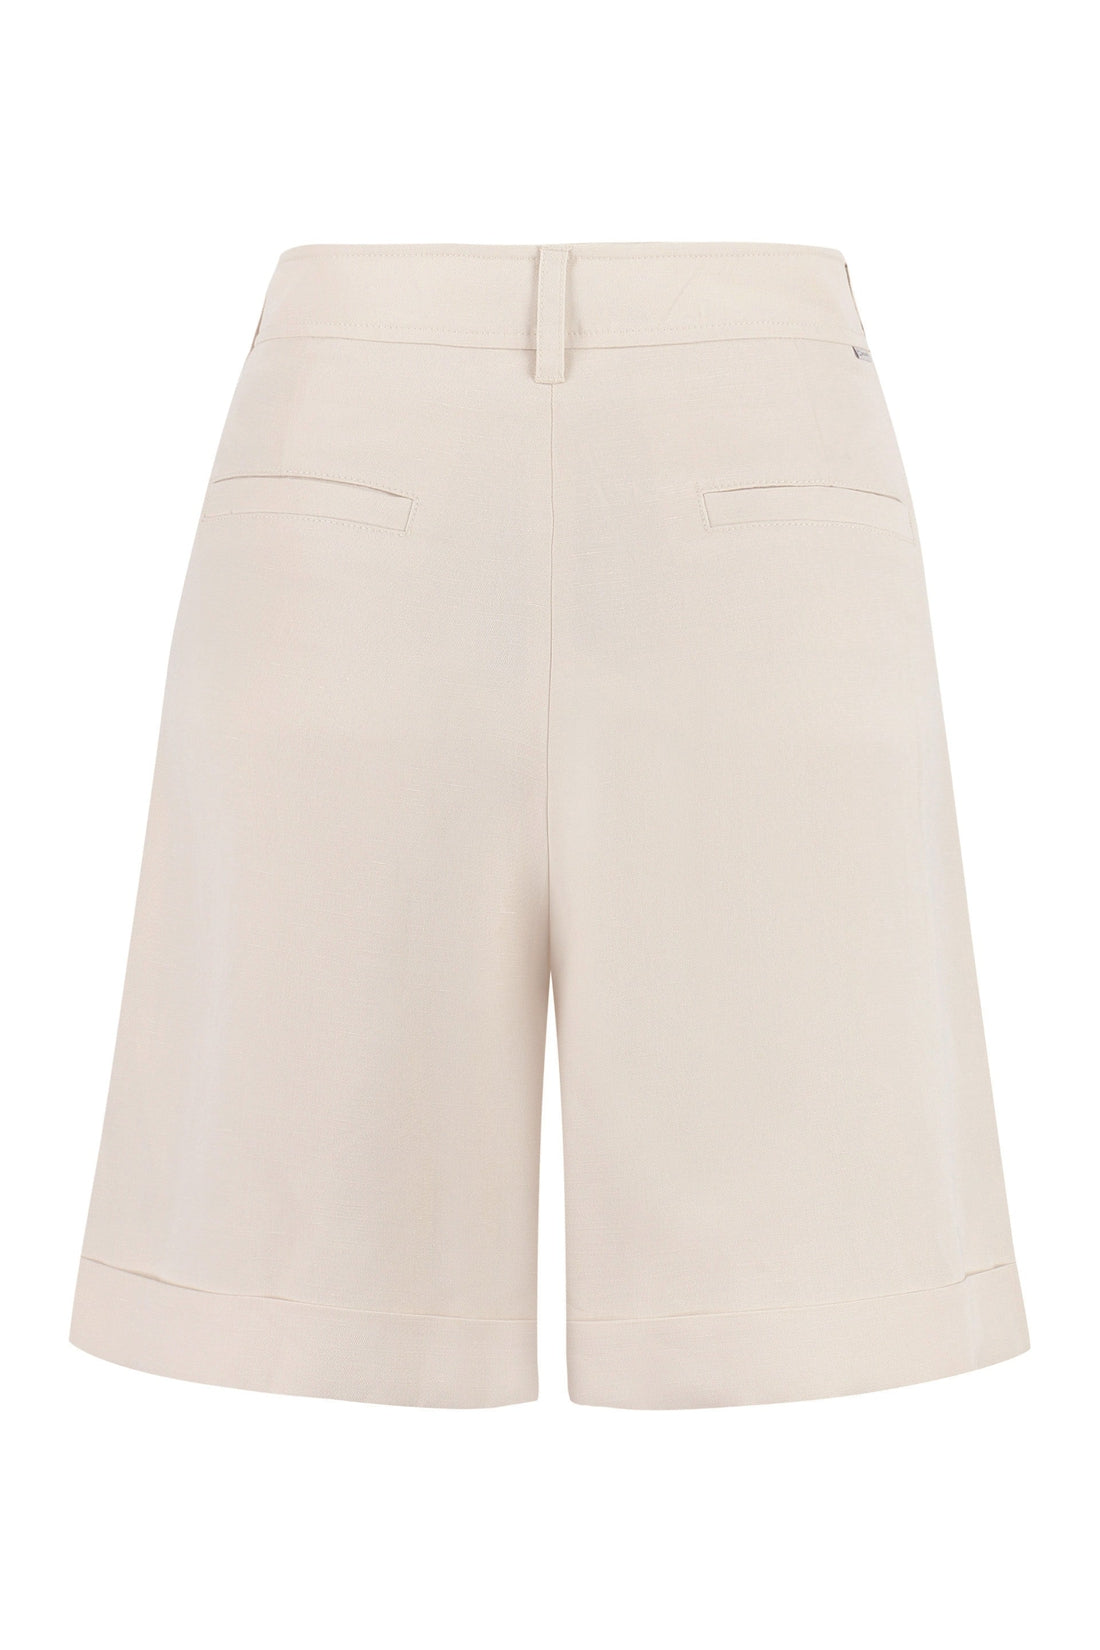 Woolrich-OUTLET-SALE-Linen blend shorts-ARCHIVIST